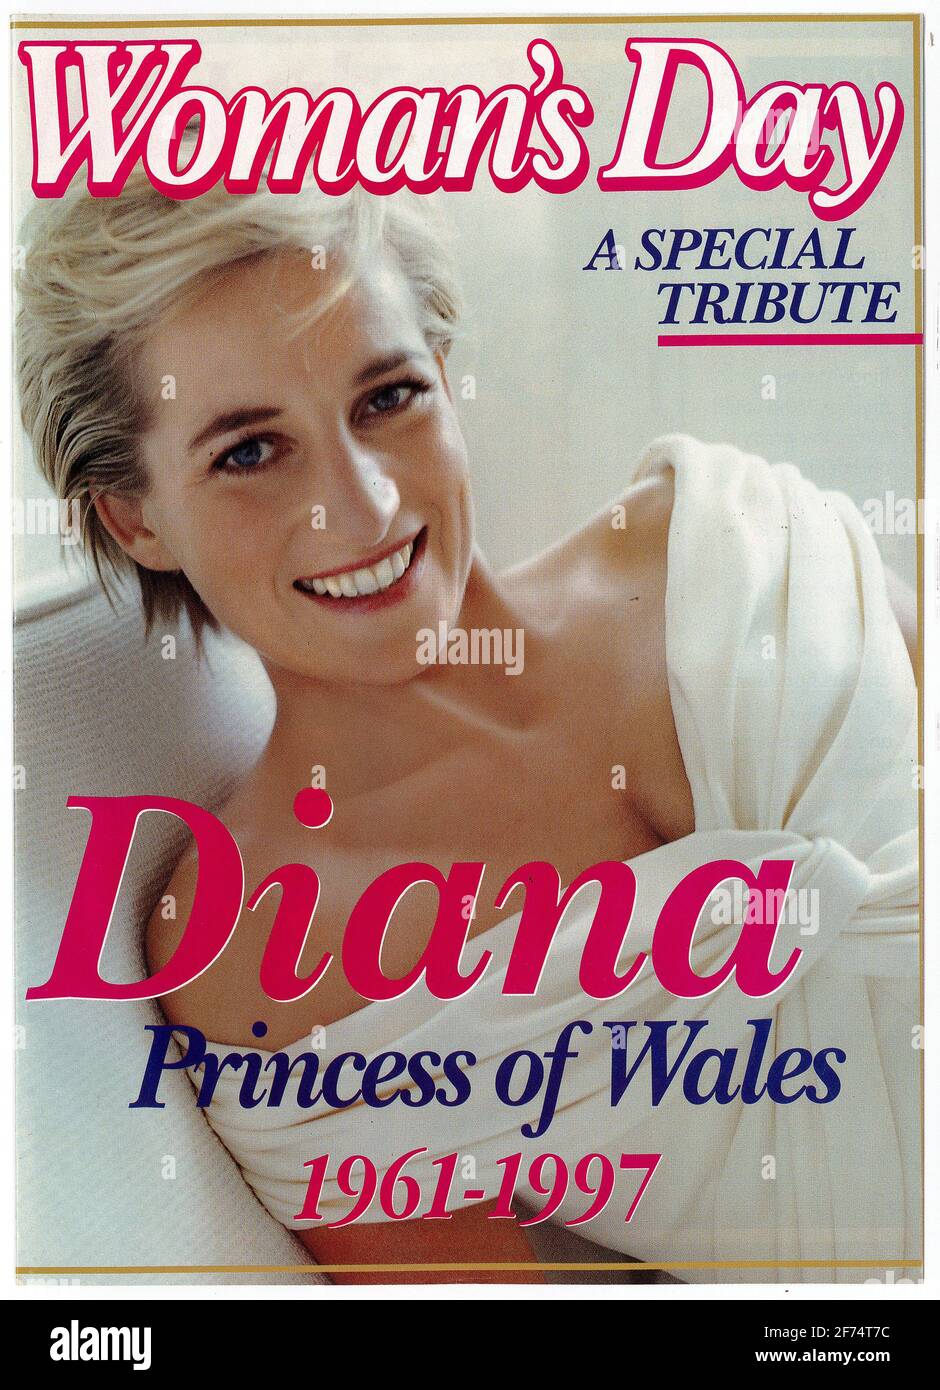 Portada de la revista Australian Woman's Day alrededor del 15 de septiembre de 1997, como homenaje a Diana, Princesa de Gales Foto de stock